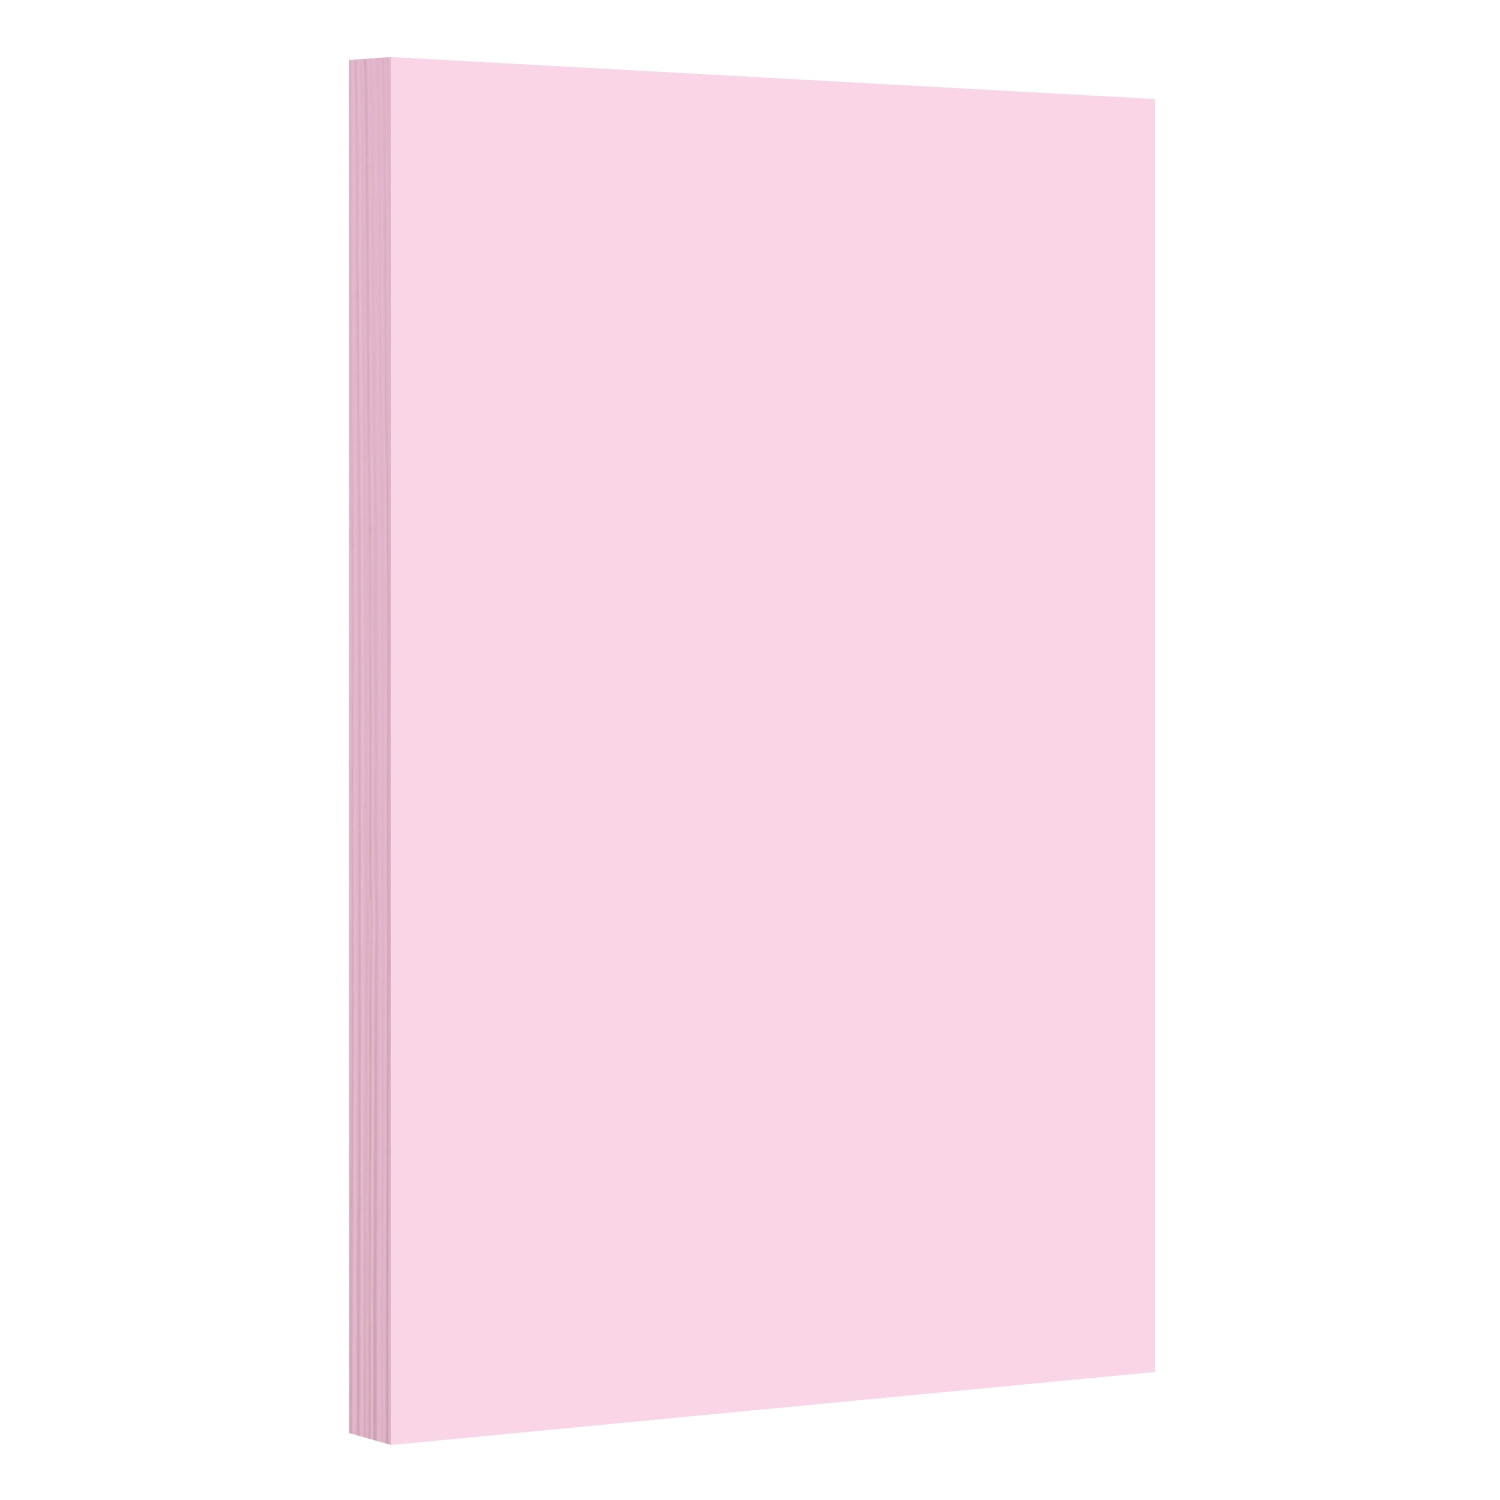 Pink - Pastel Color Paper 20lb. Size 8.5 x 14 Legal/Menu Size - 500 per Pack